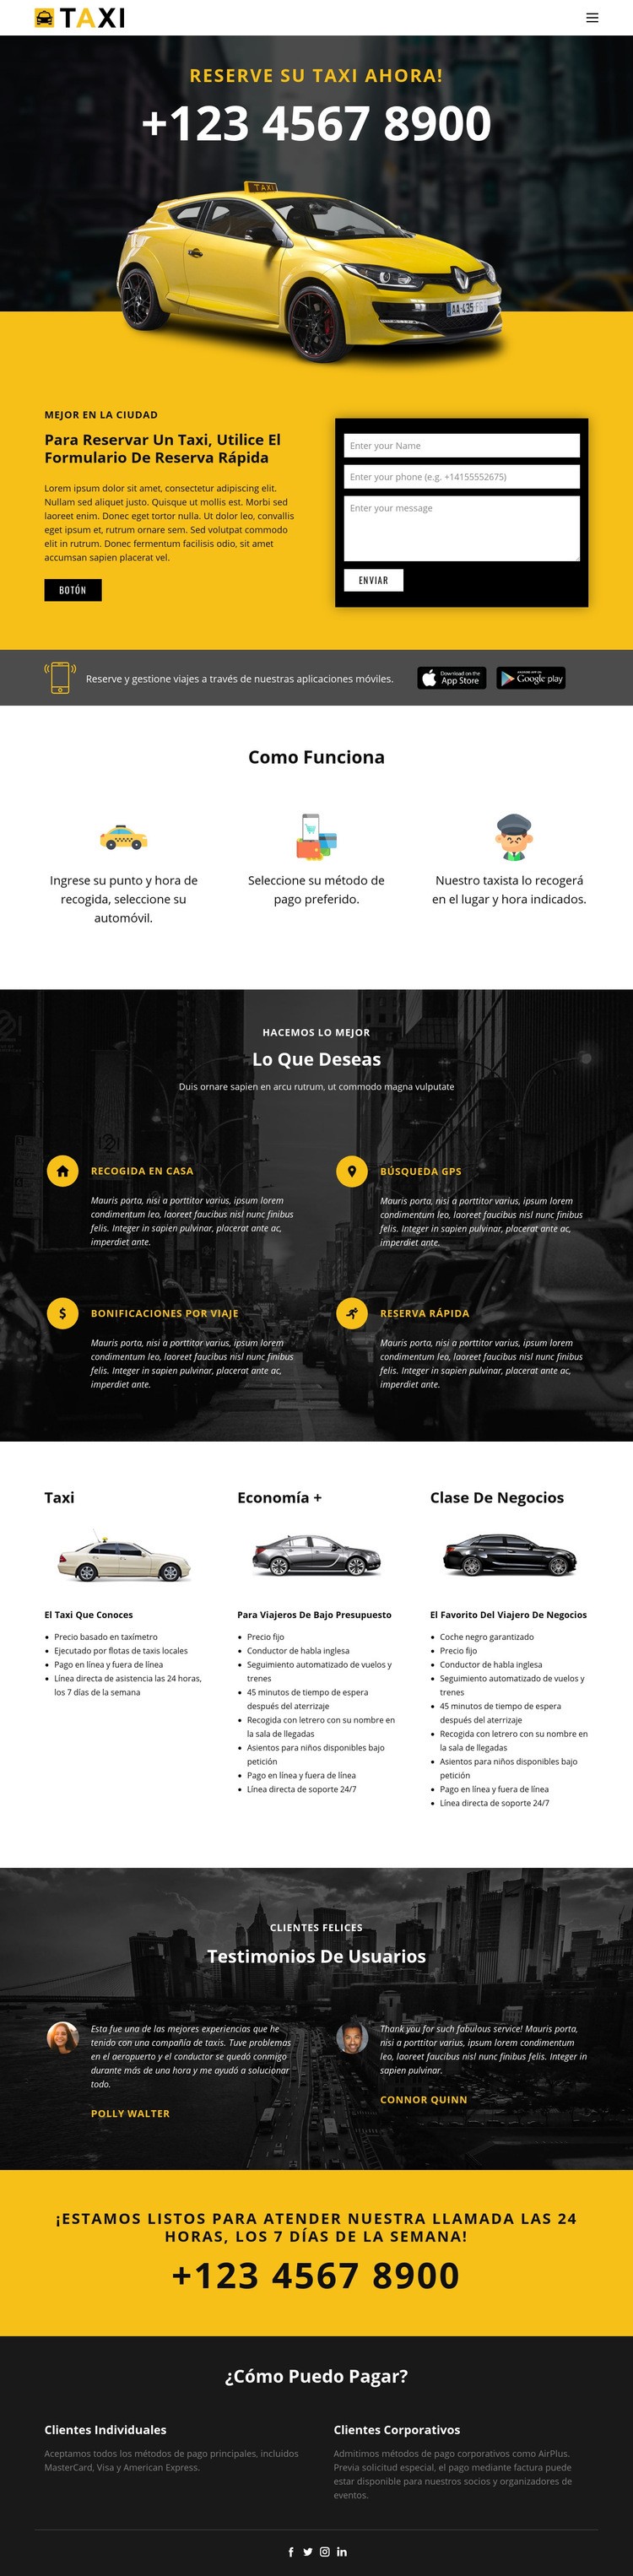 Los taxis más rápidos Diseño de páginas web